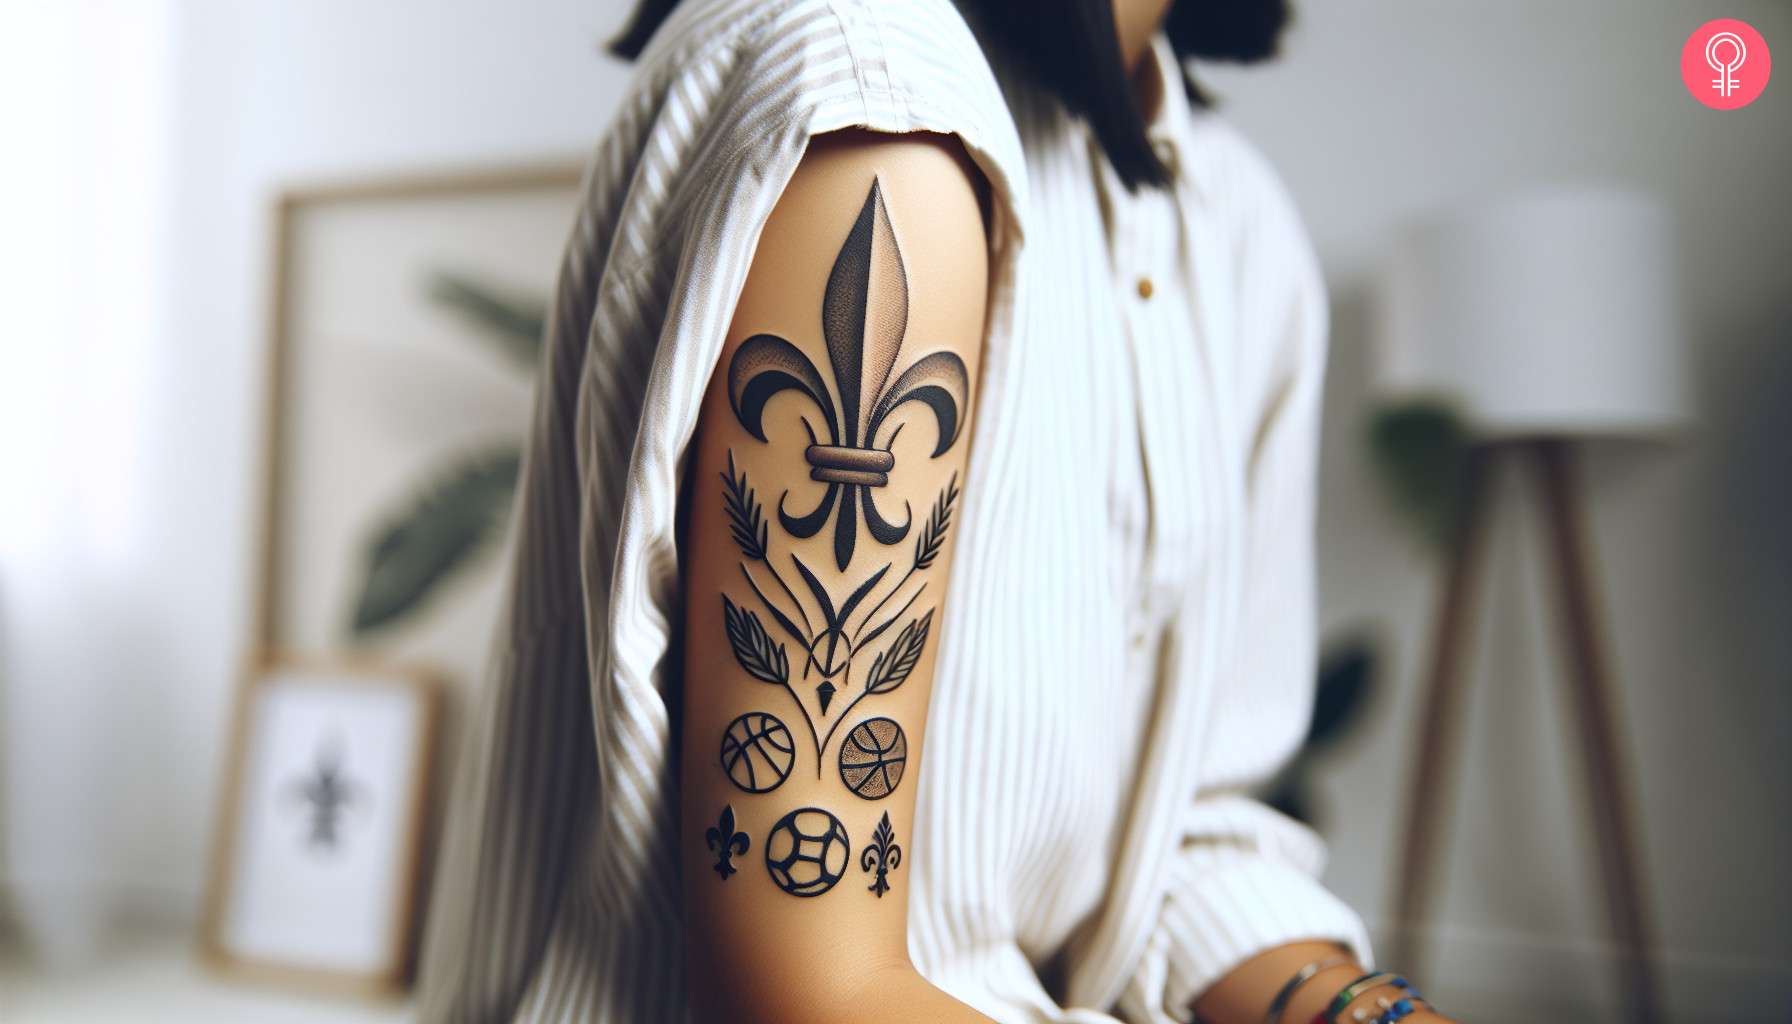 An upper arm sportsman fleur de lis tattoo